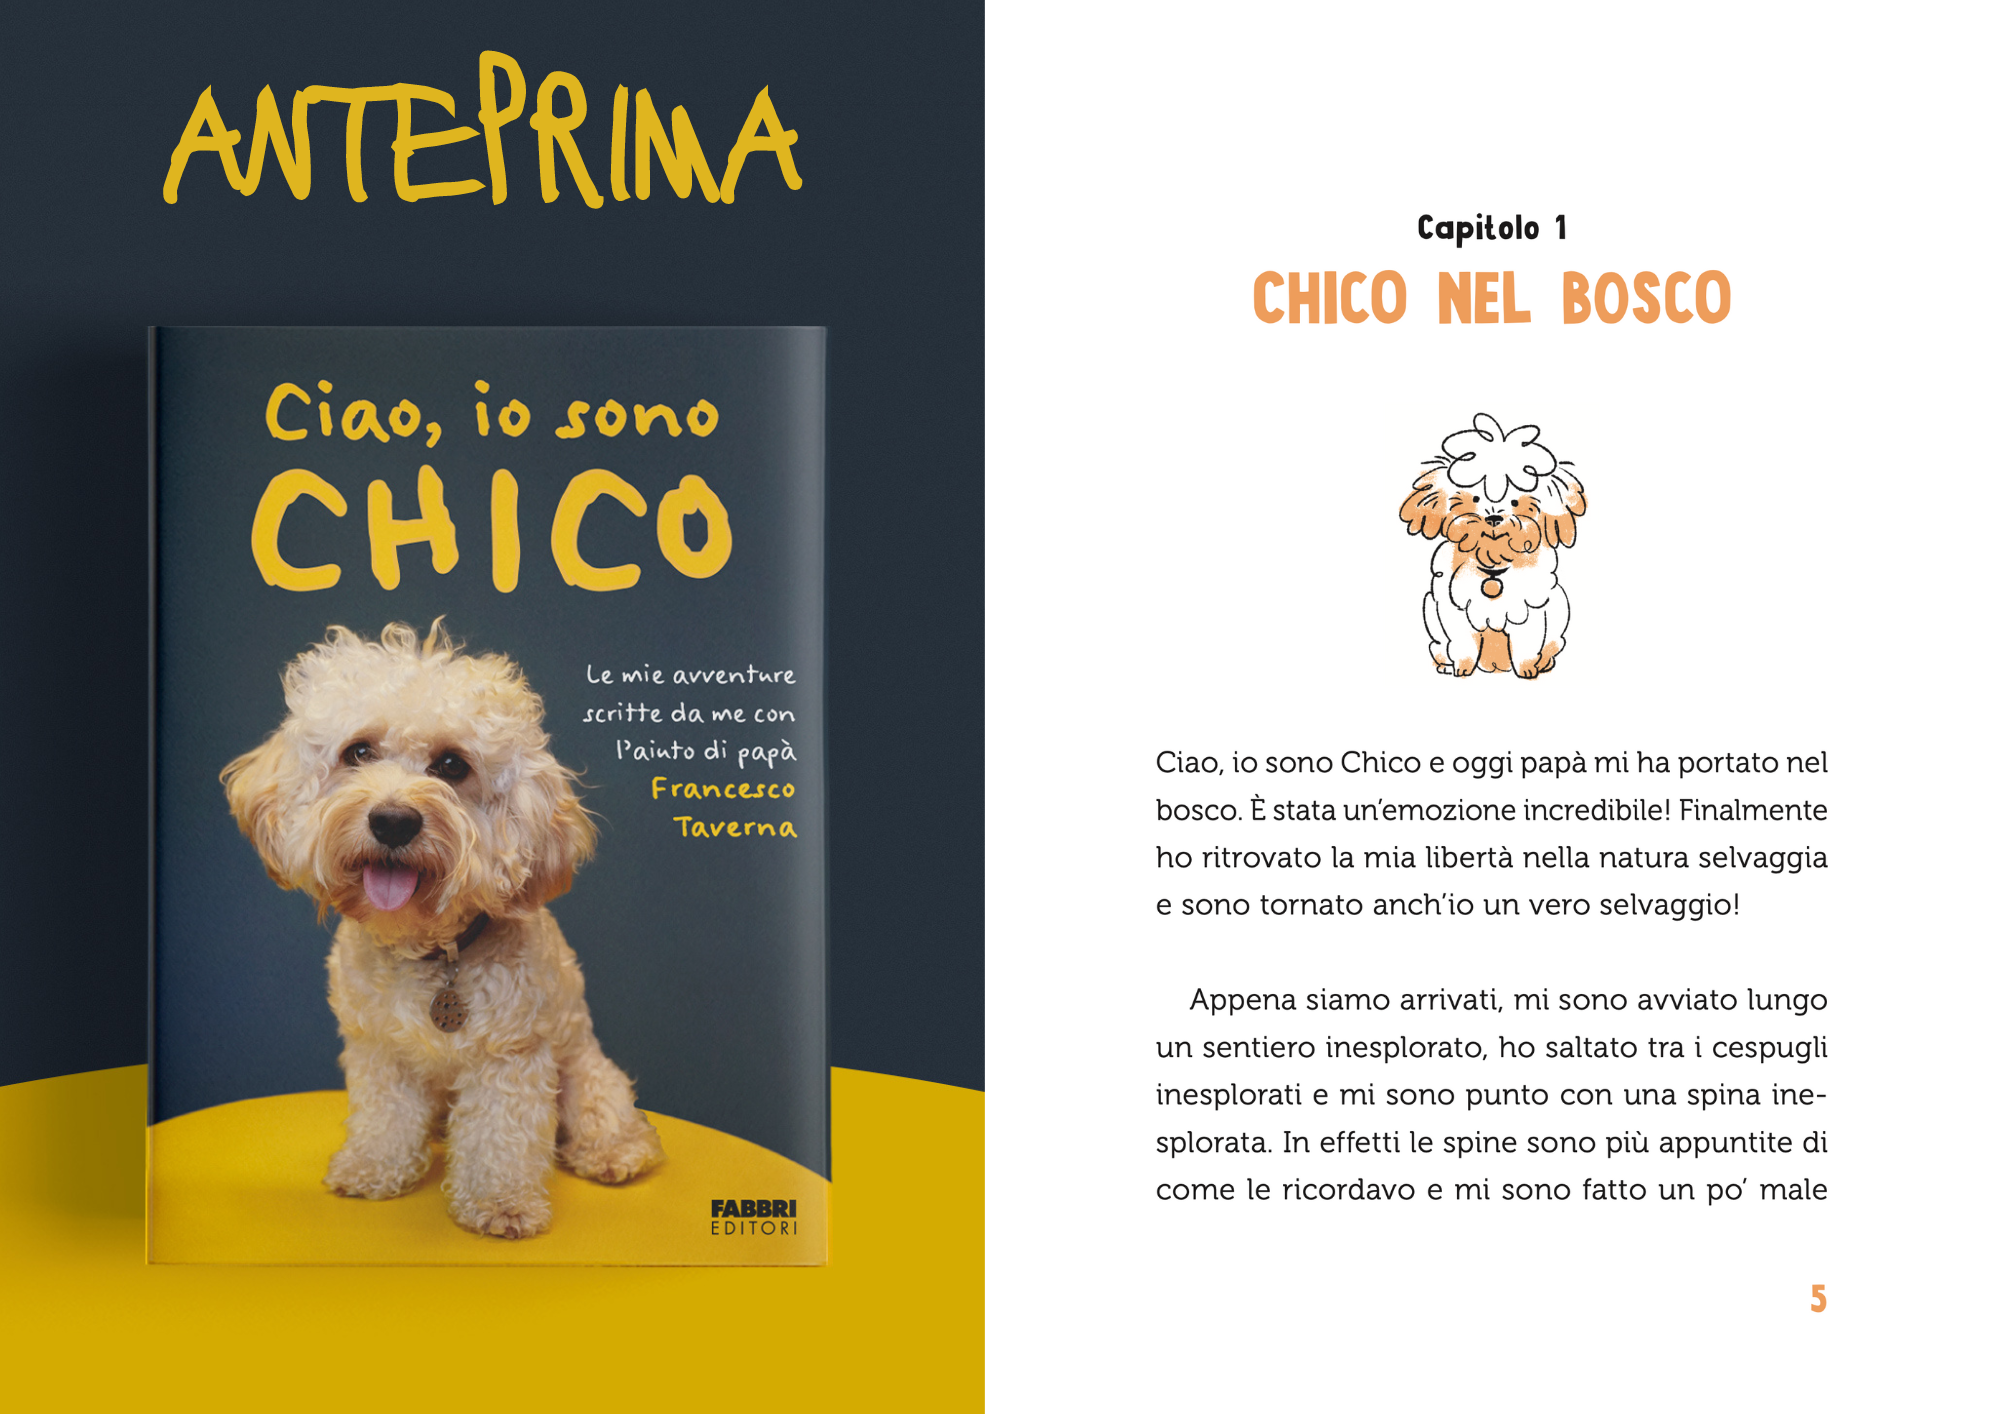 Bundle libri "A tutto Chico" e "Ciao, io sono Chico" + Adesivi omaggio